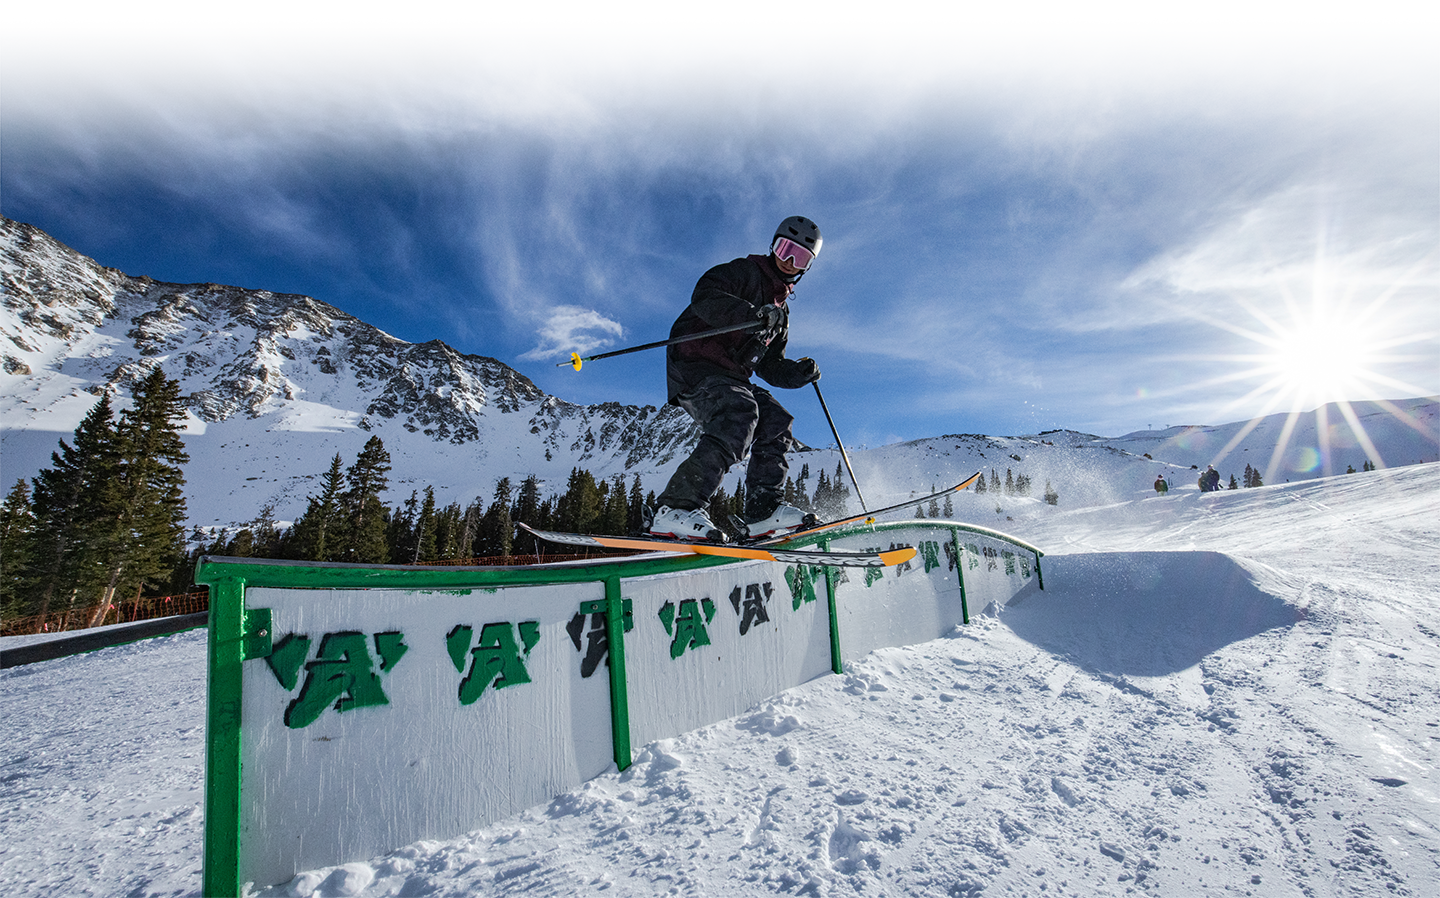 skier hits rail